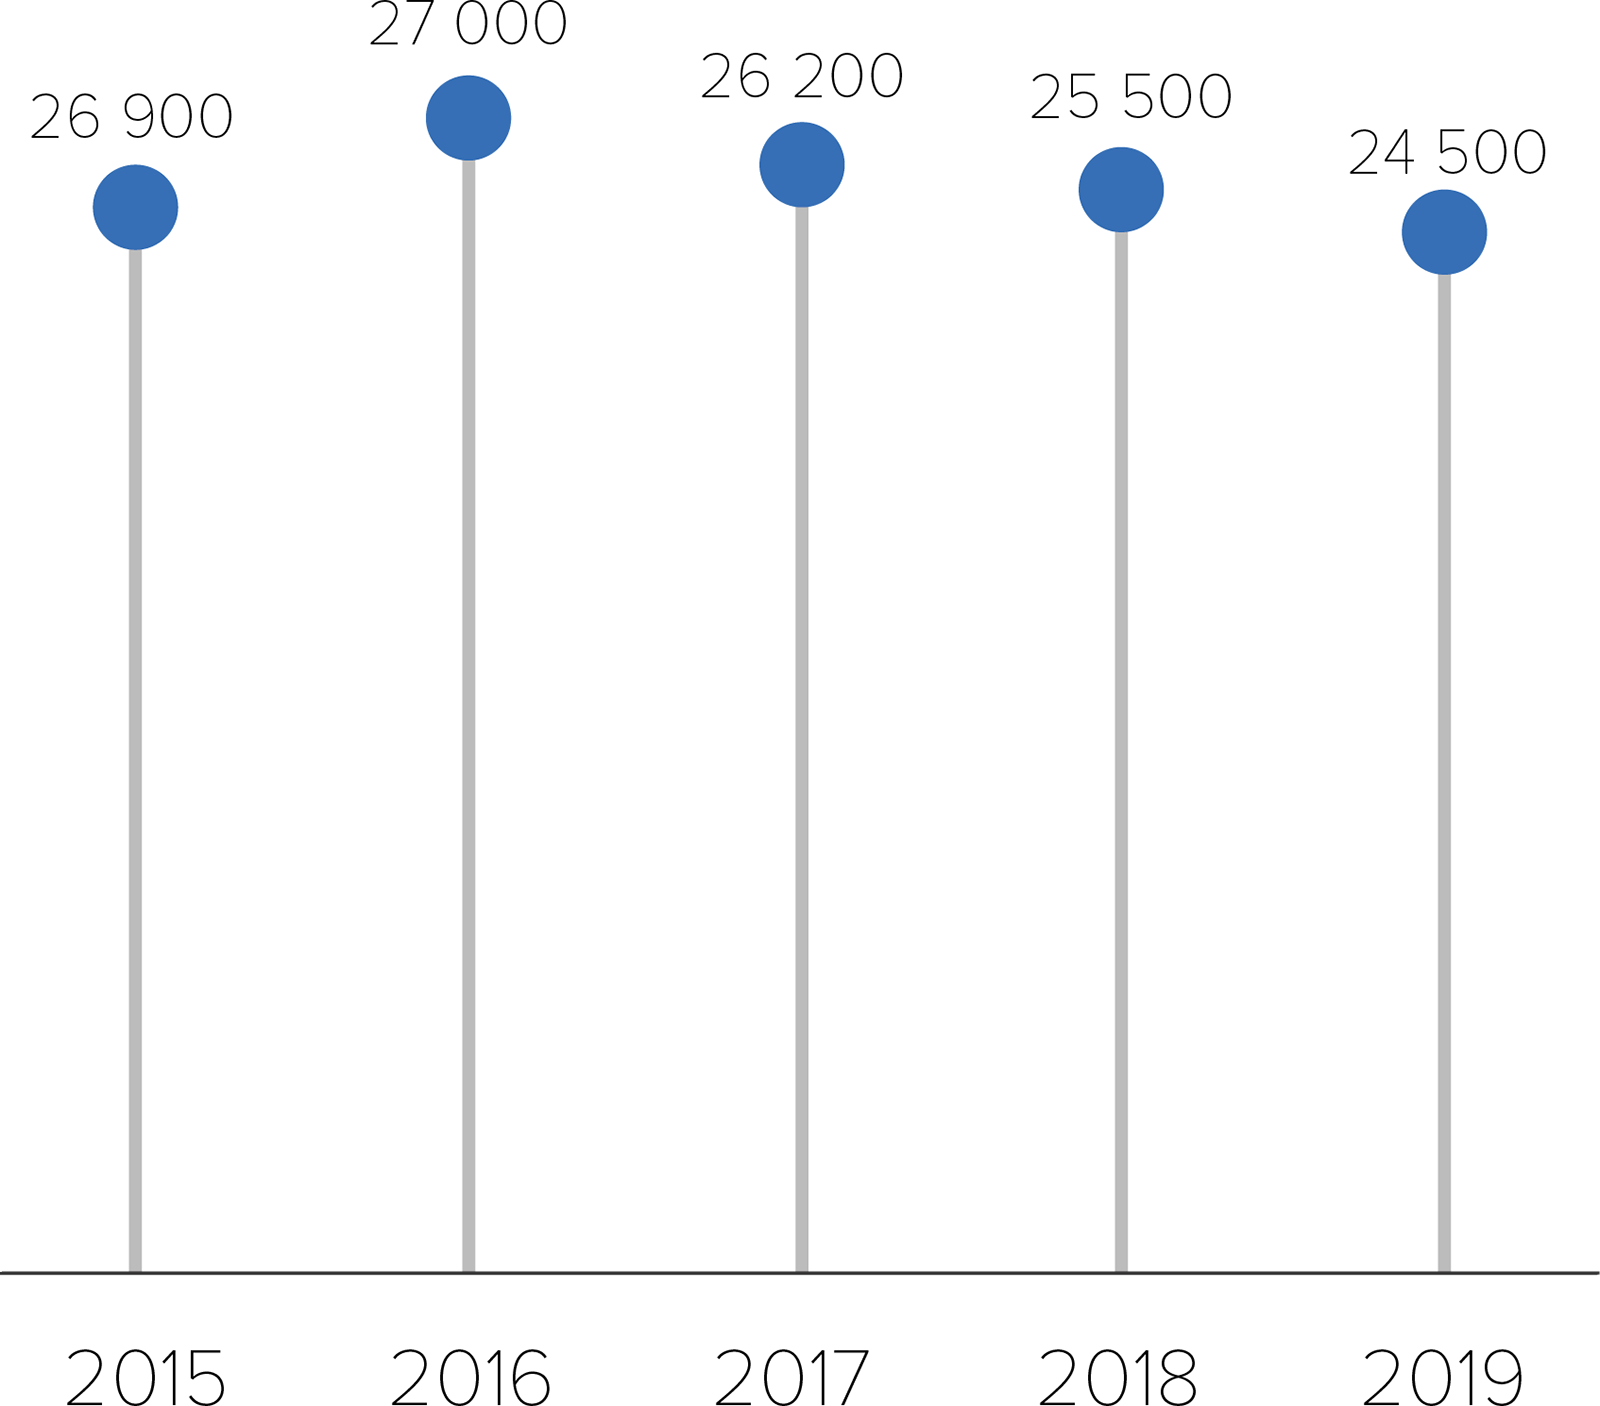 Este gráfico muestra las cantidades estimadas de infecciones por el VIH entre los hombres gais y bisexuales, desde el 2015 hasta el 2019.